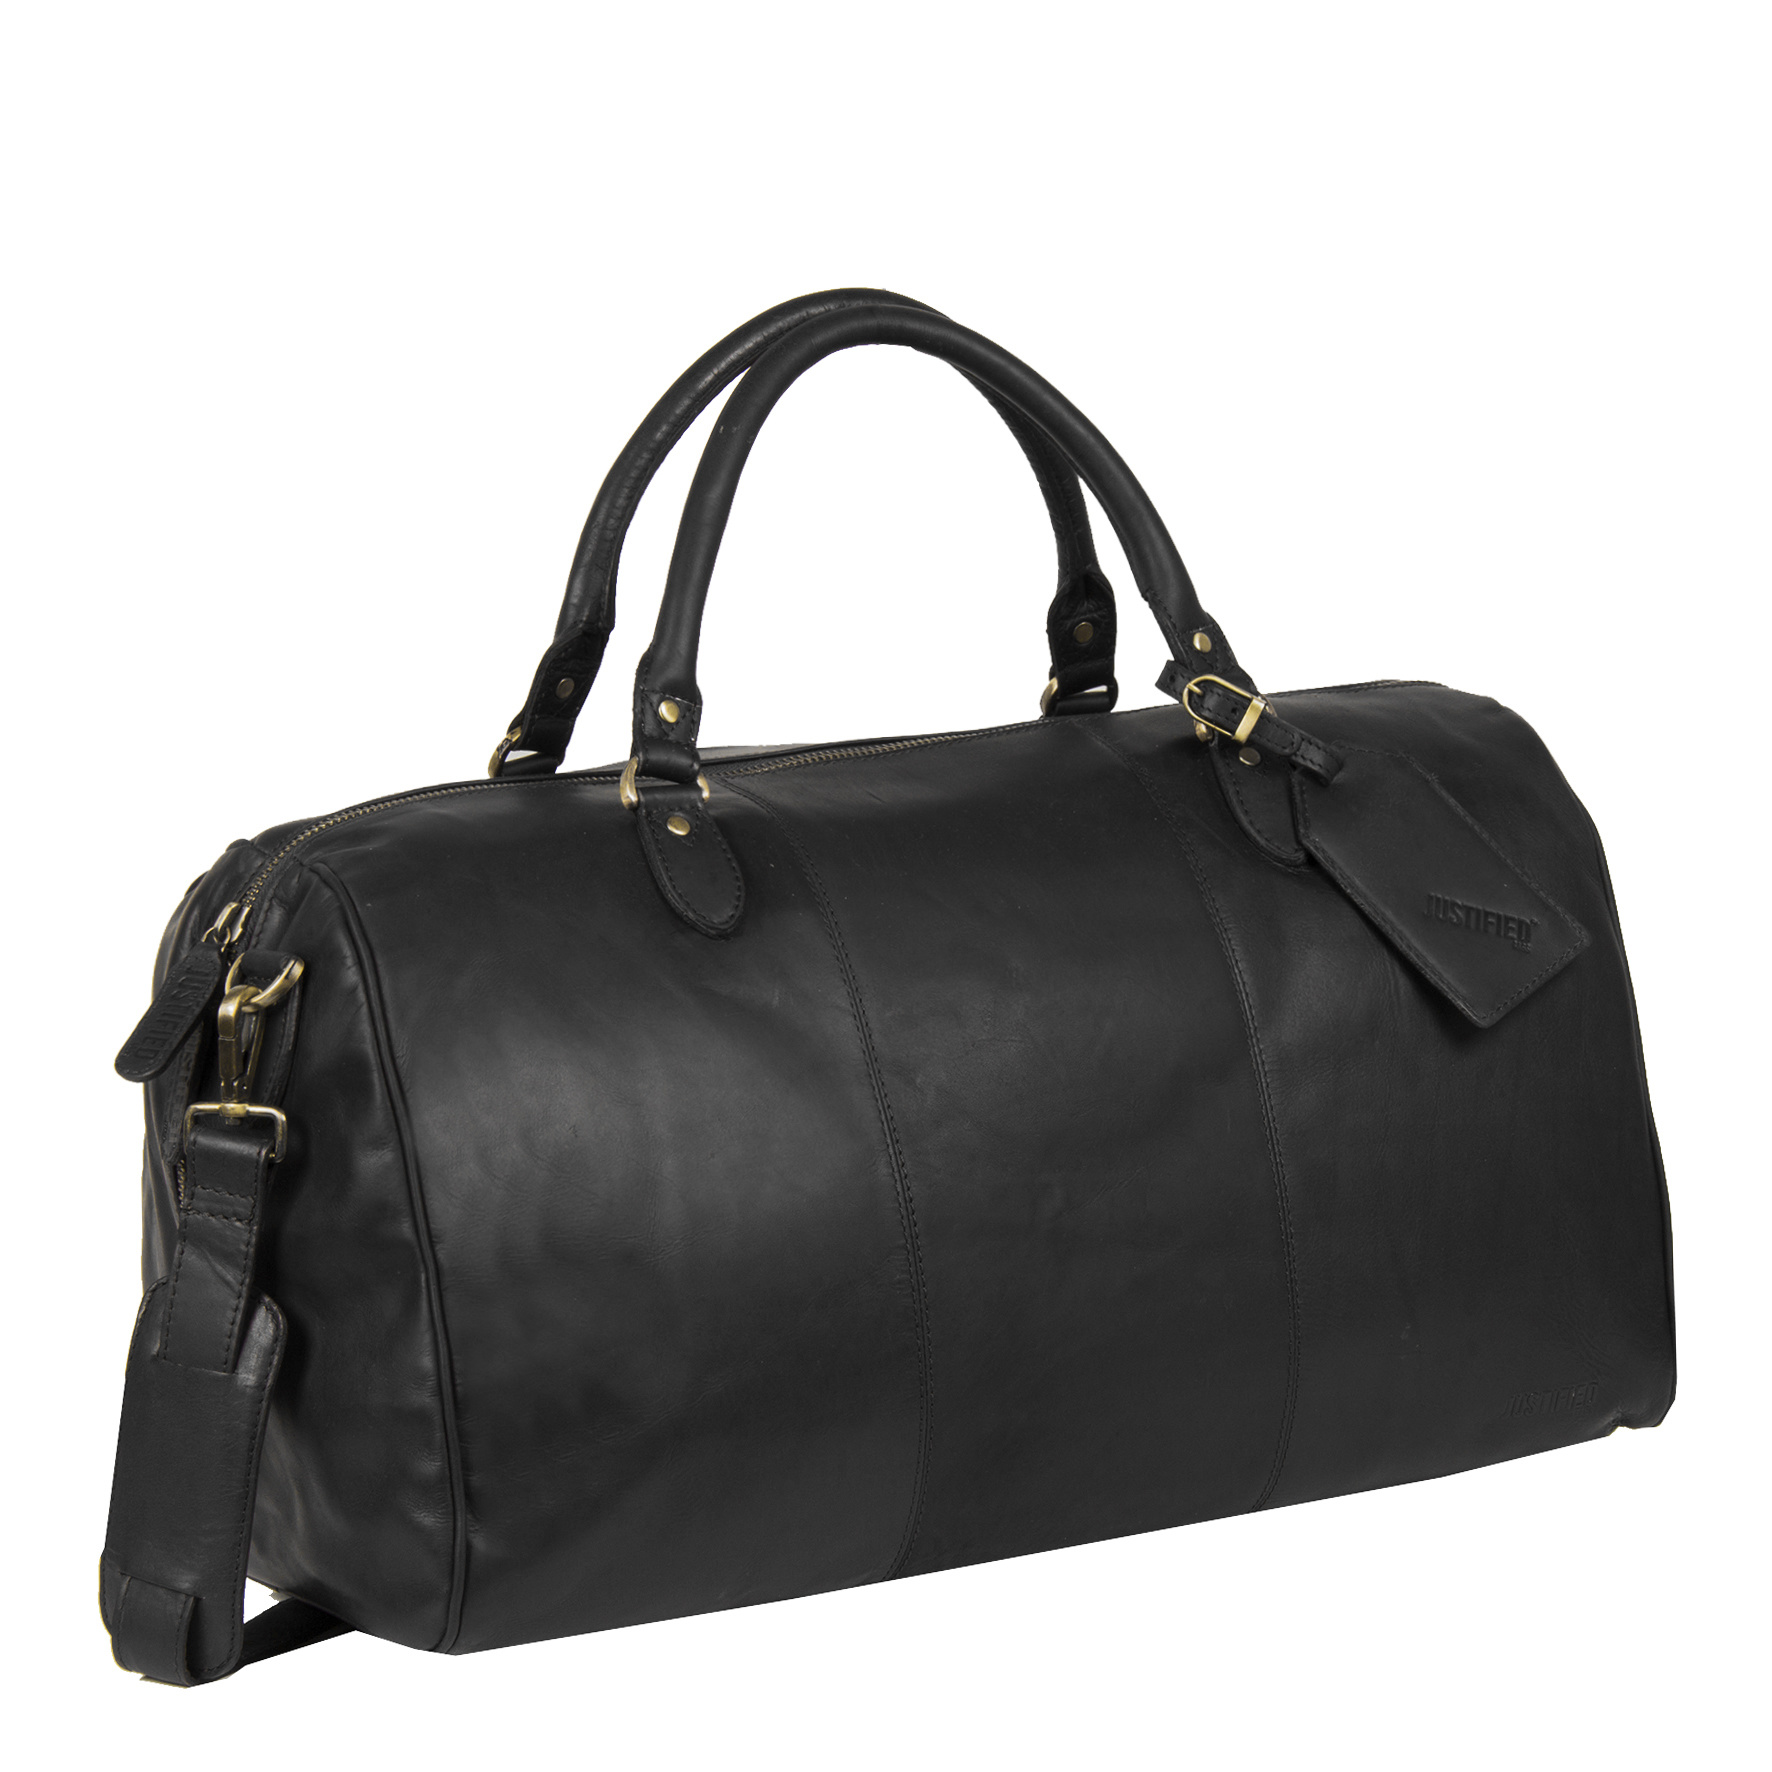 Justified Bags® - Max Duffel - Black Leather Weekender - Travel Bag ...